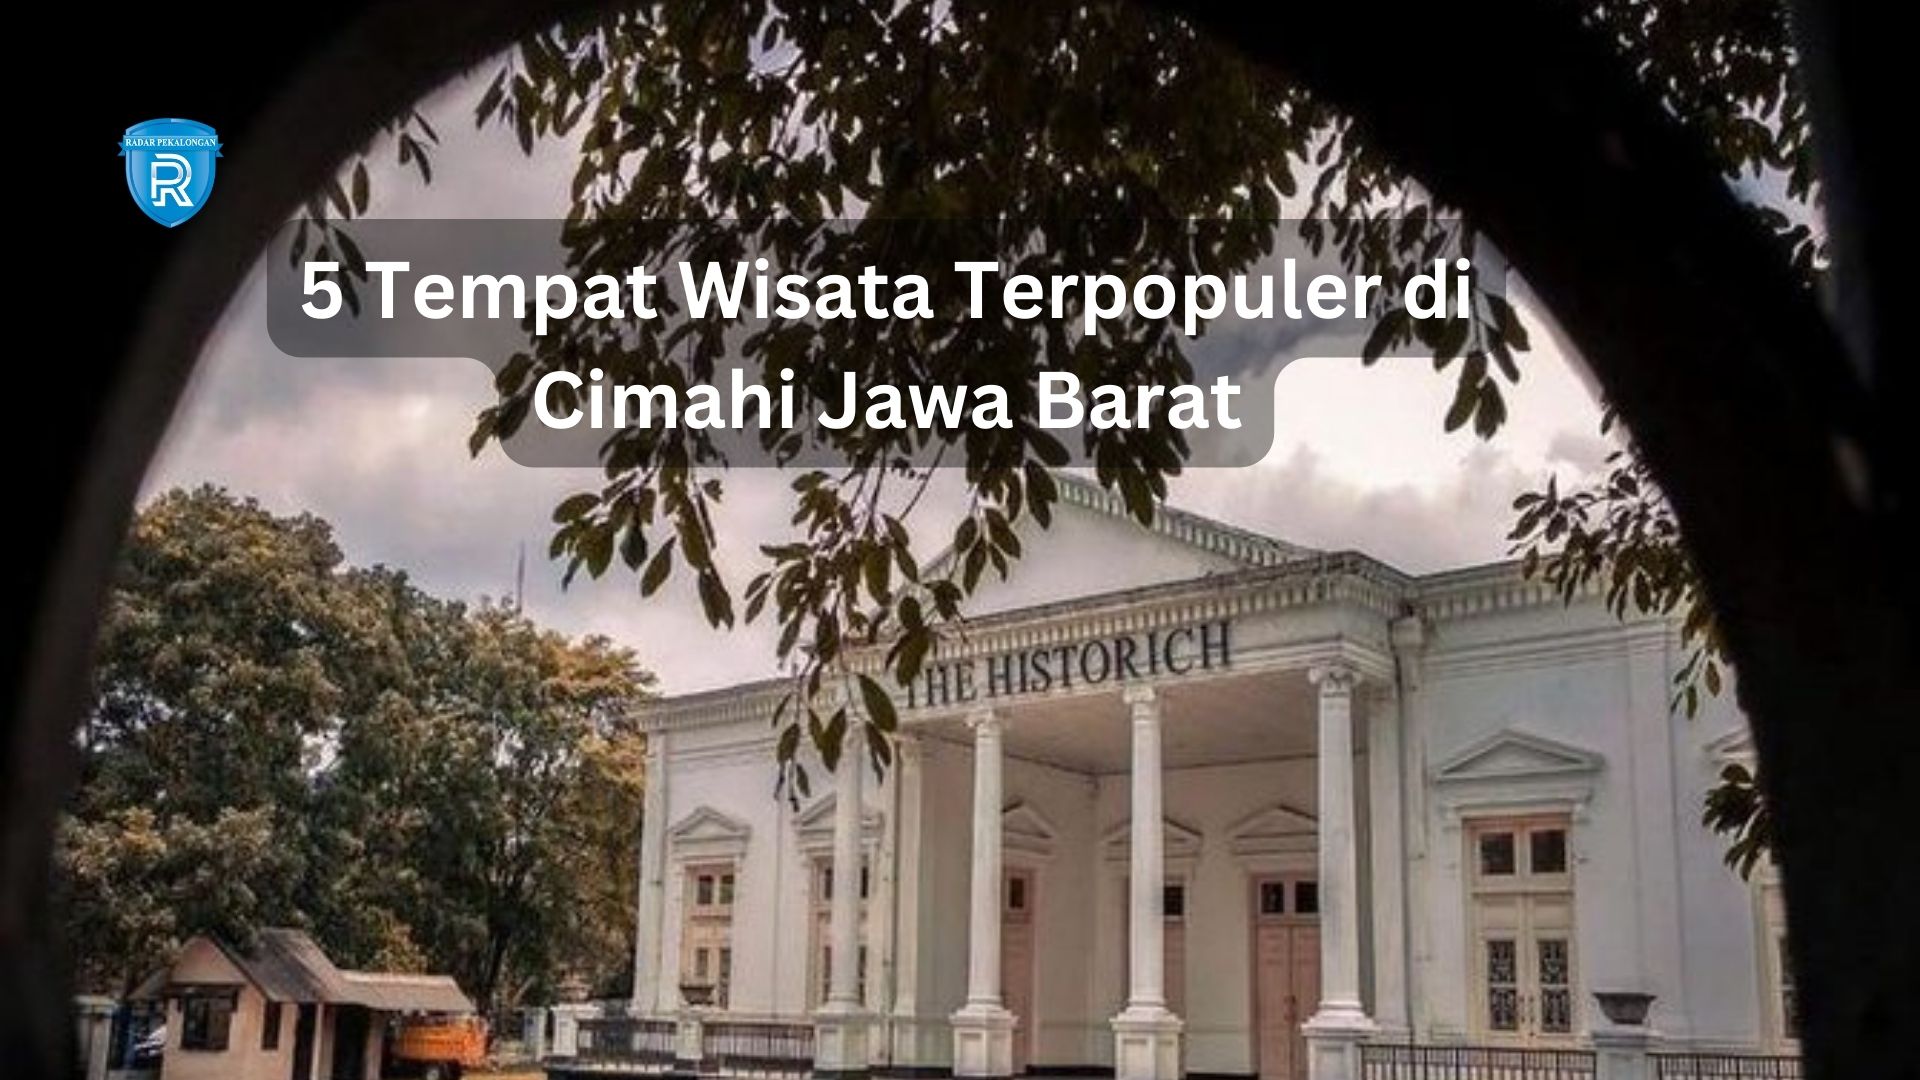 5 Tempat Wisata Terpopuler di Cimahi Jawa Barat yang Menarik Para Wisatawan, HTM cuma 2 Ribu!